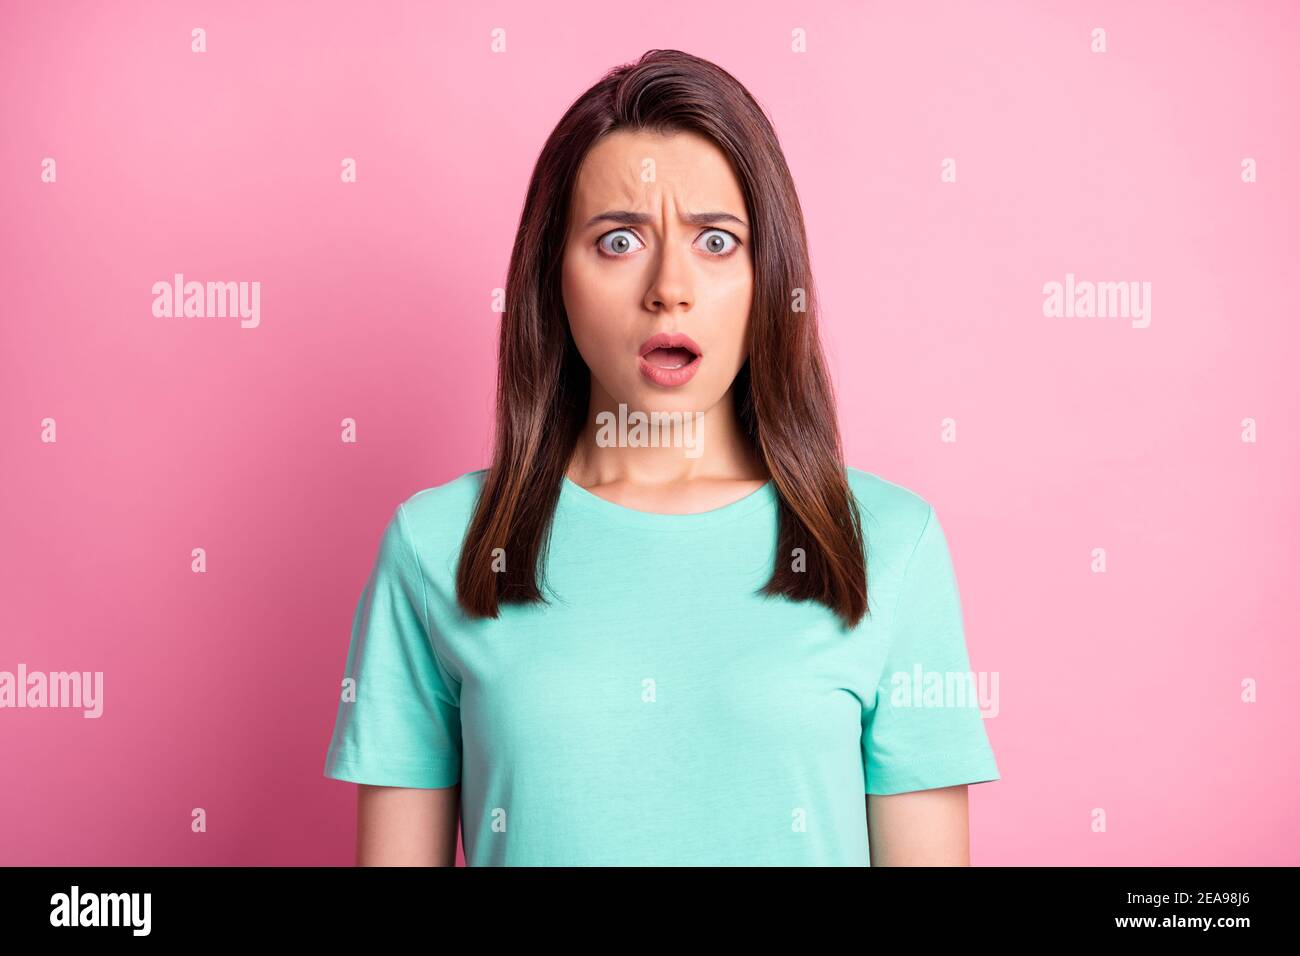 Portrait Foto von schockiert beunruhigt junge Frau mit geöffnet Hauptrolle Mund isoliert auf pastellrosa Hintergrund Stockfoto